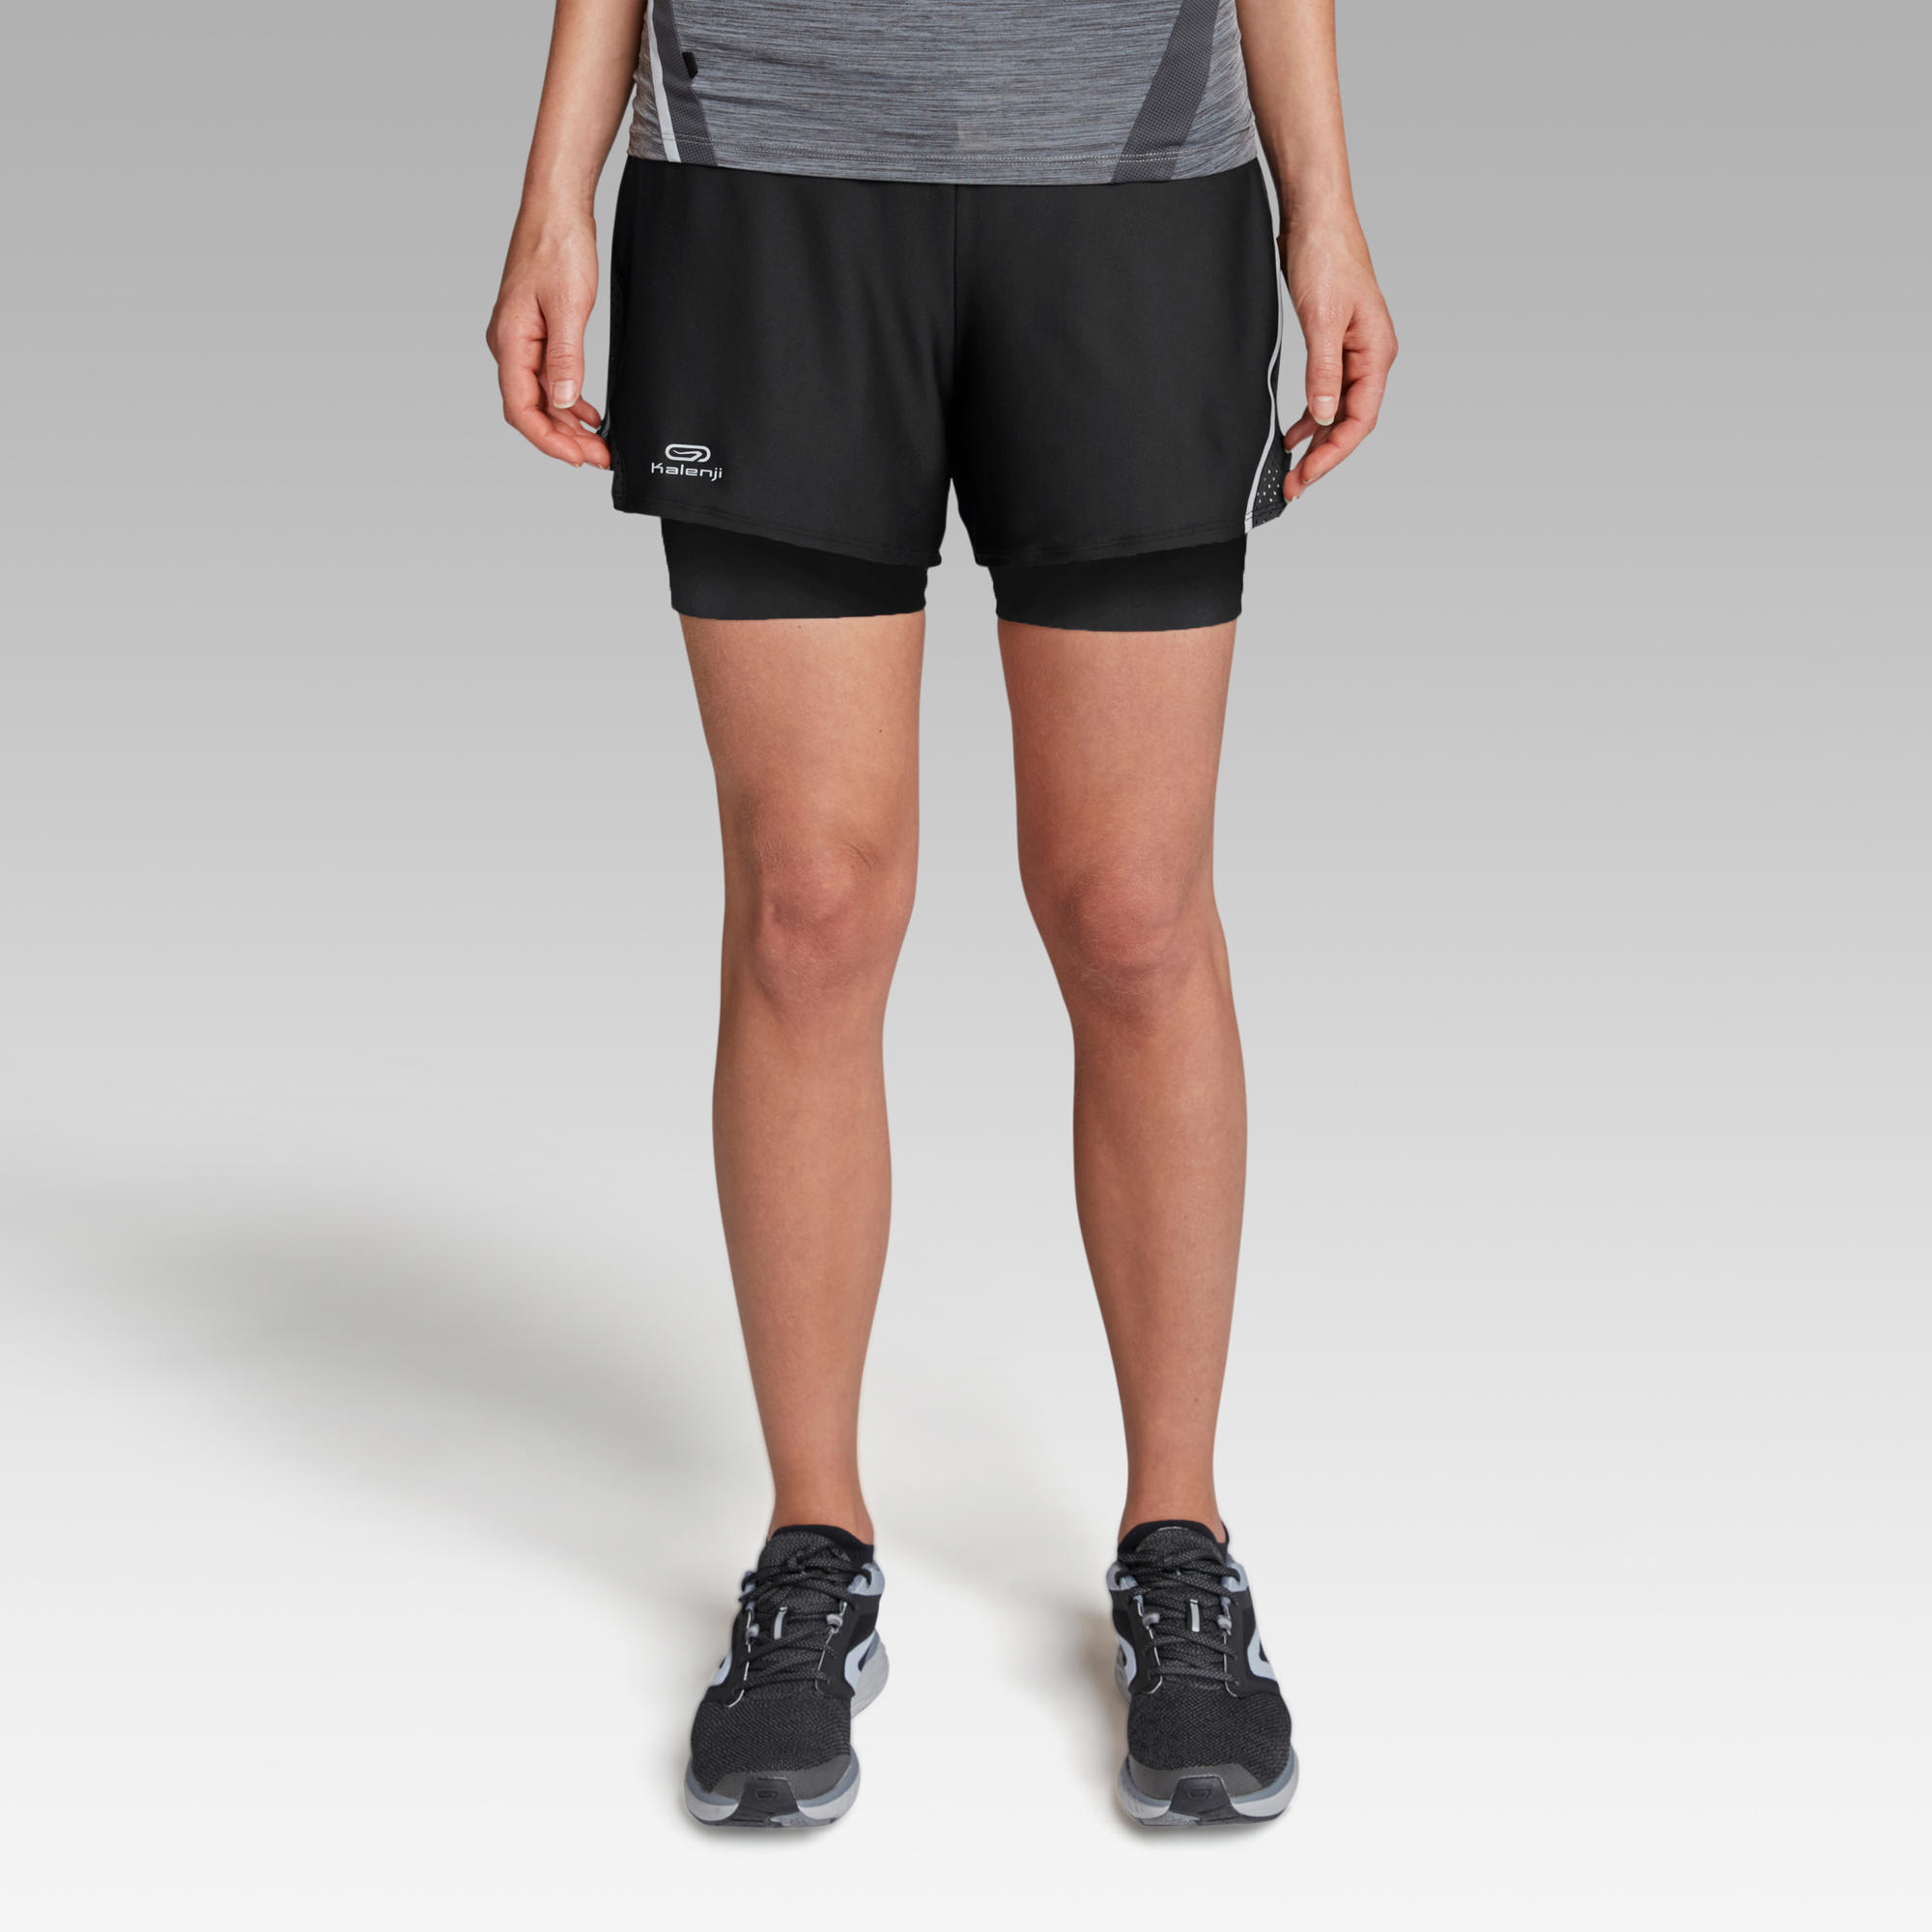 Venta > pantalon corto deporte mujer decathlon > en stock